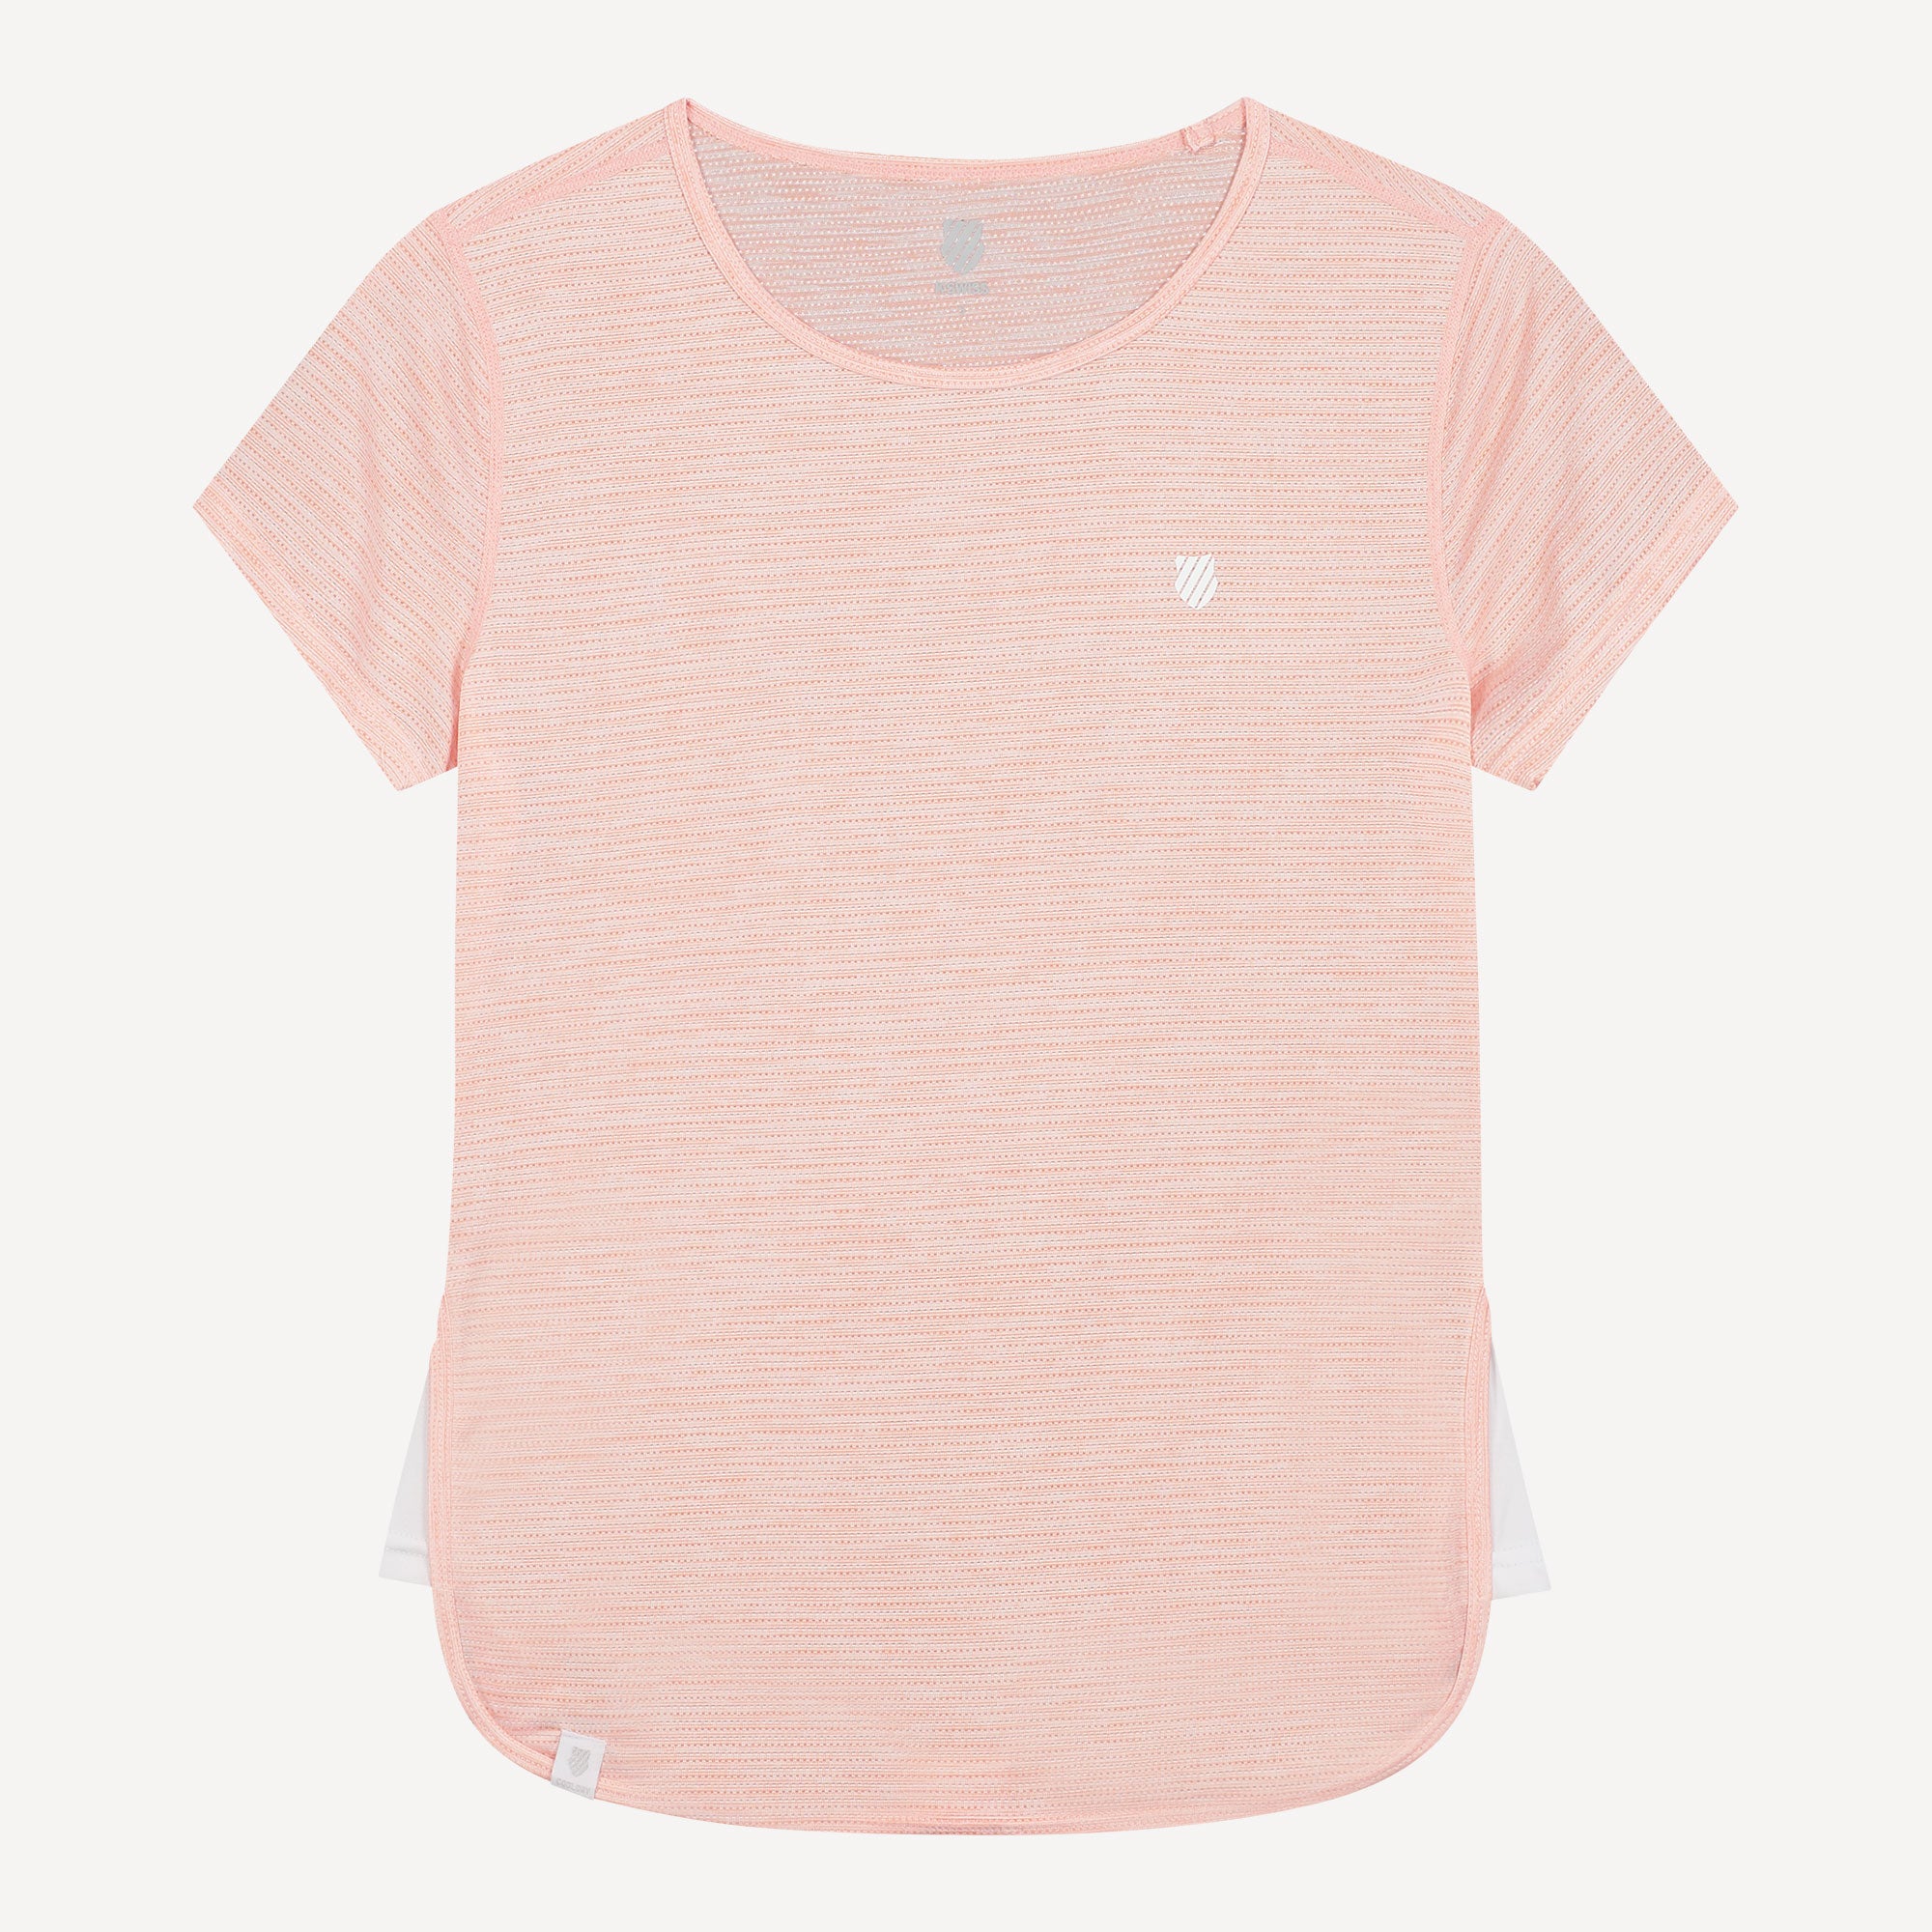 K-Swiss Hypercourt Women's Capsleeve Tennis Shirt Pink (1)